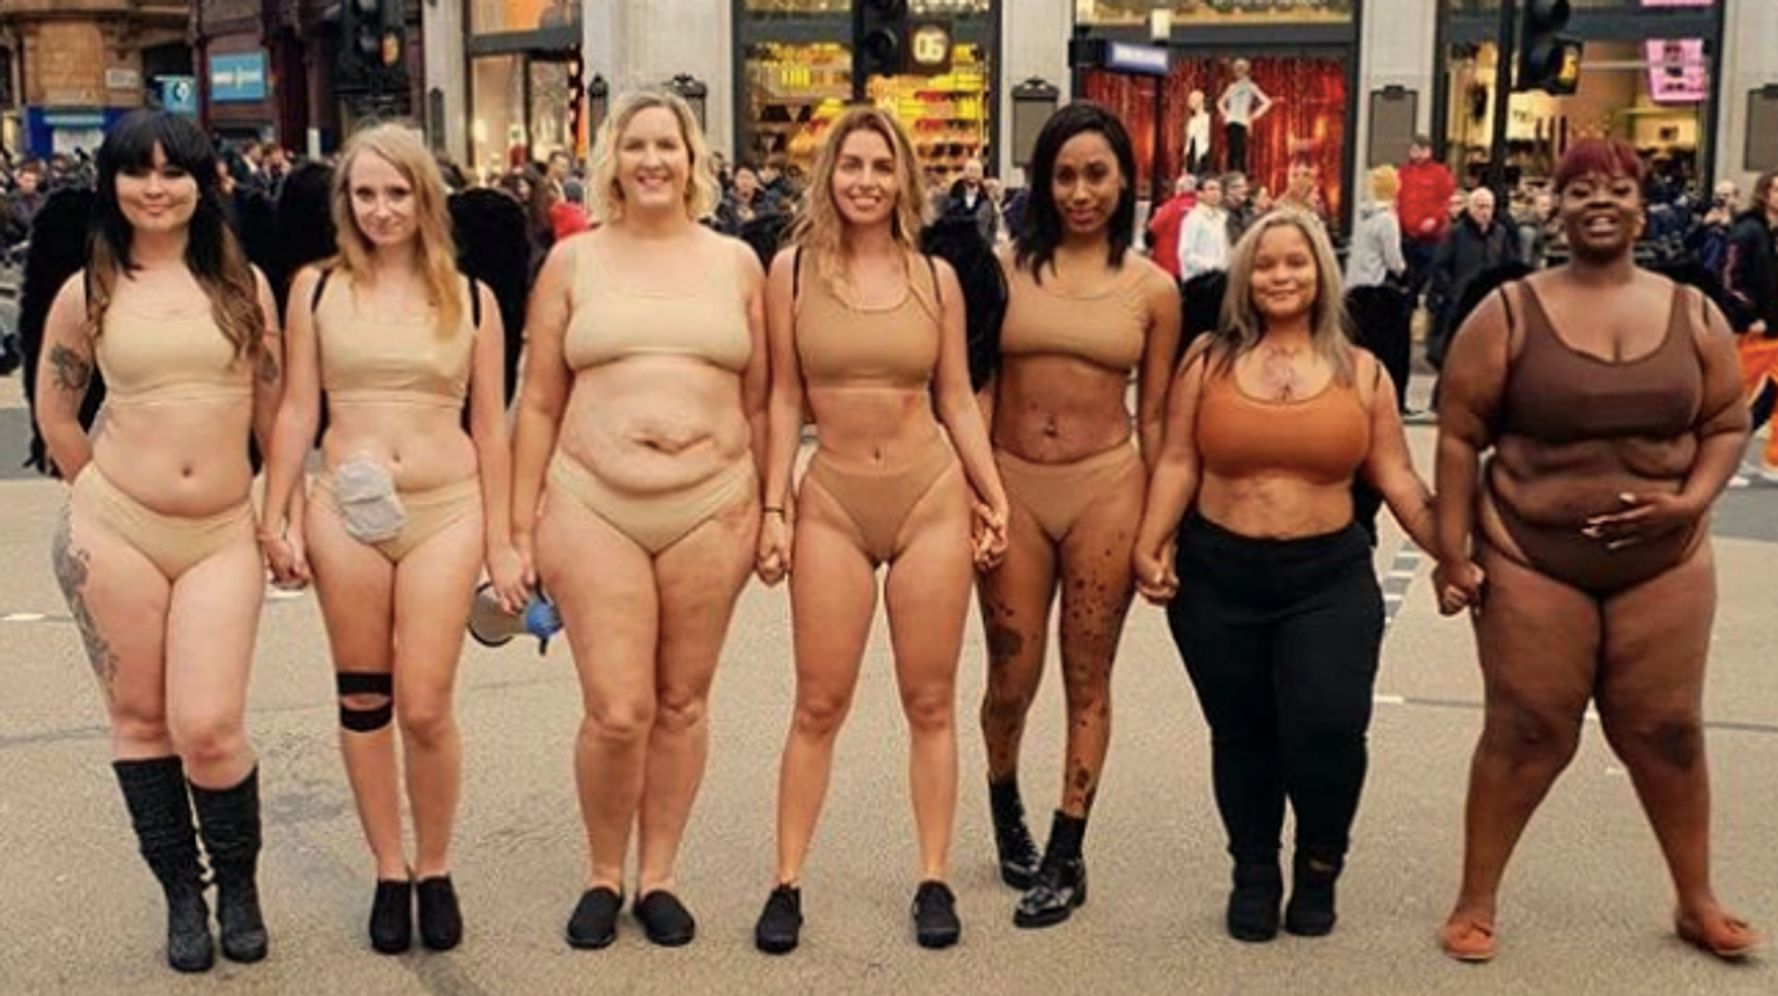 どんな体も美しい ヌードカラーの下着を身につけ 7人の女性がヴィクトリアズ シークレットに抗議 ハフポスト Life